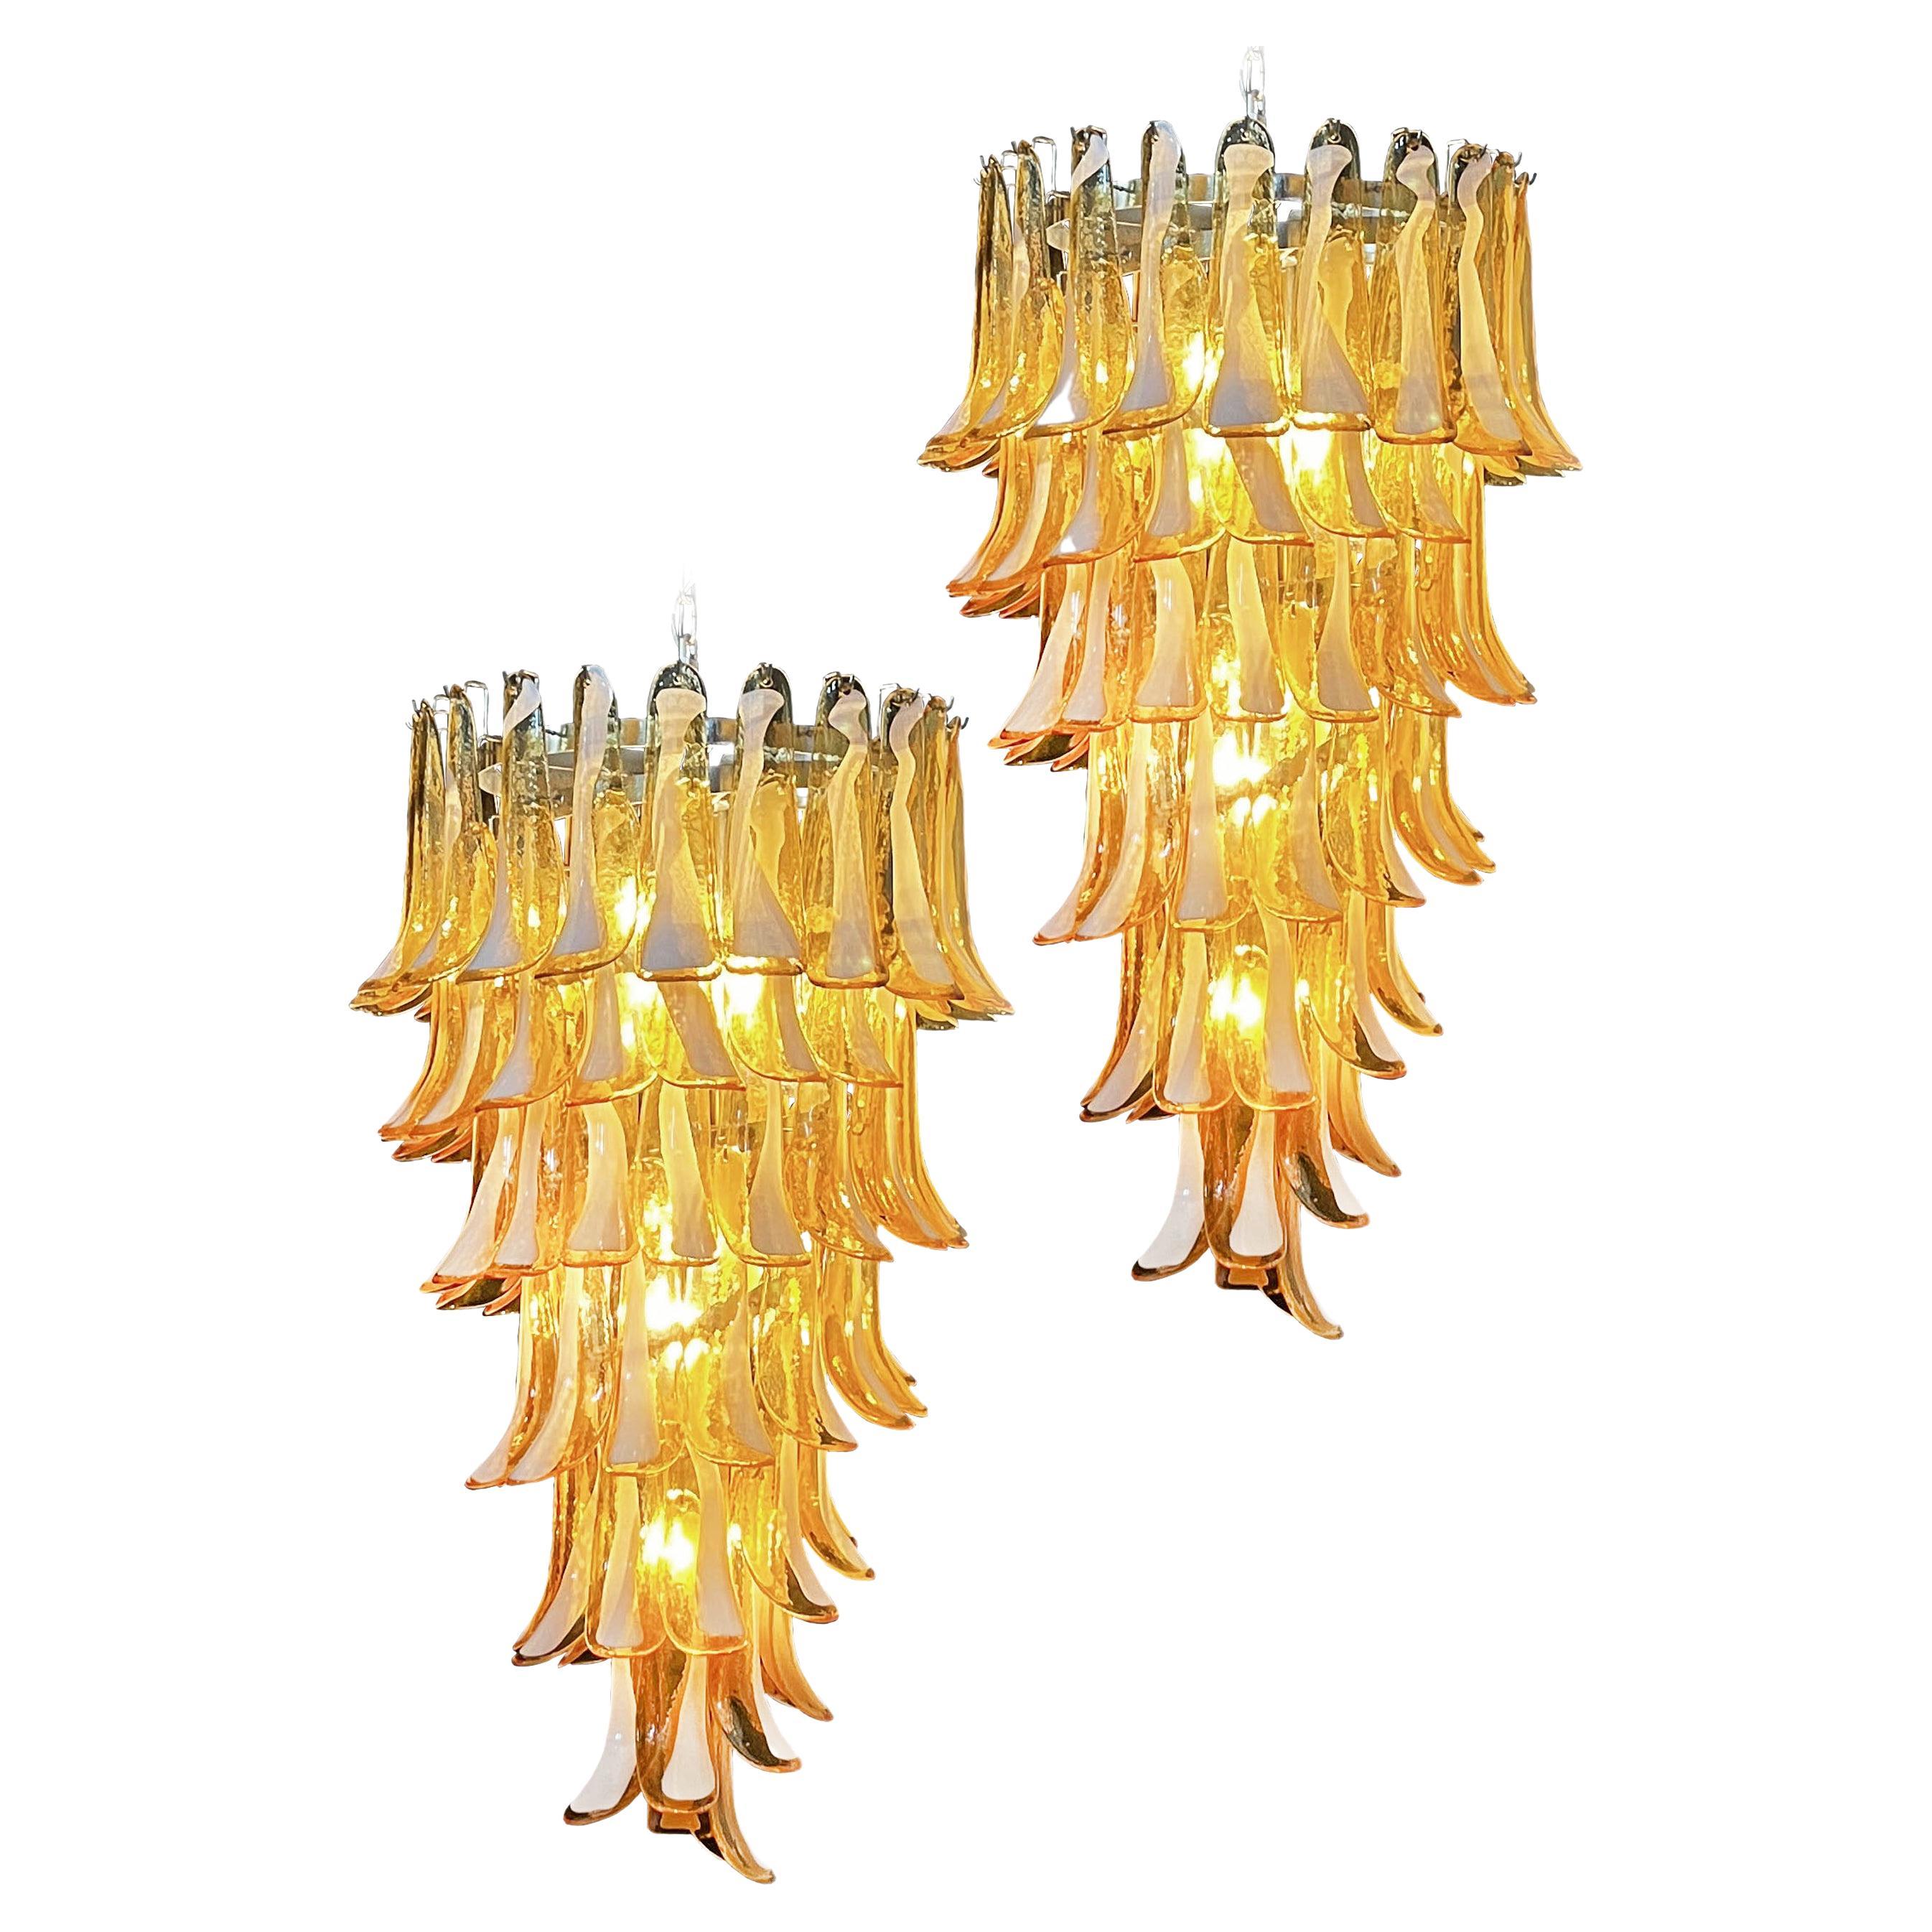 Riesige italienische Murano-Glas-Spiralkronleuchter, 83 Bernsteinglasblüten